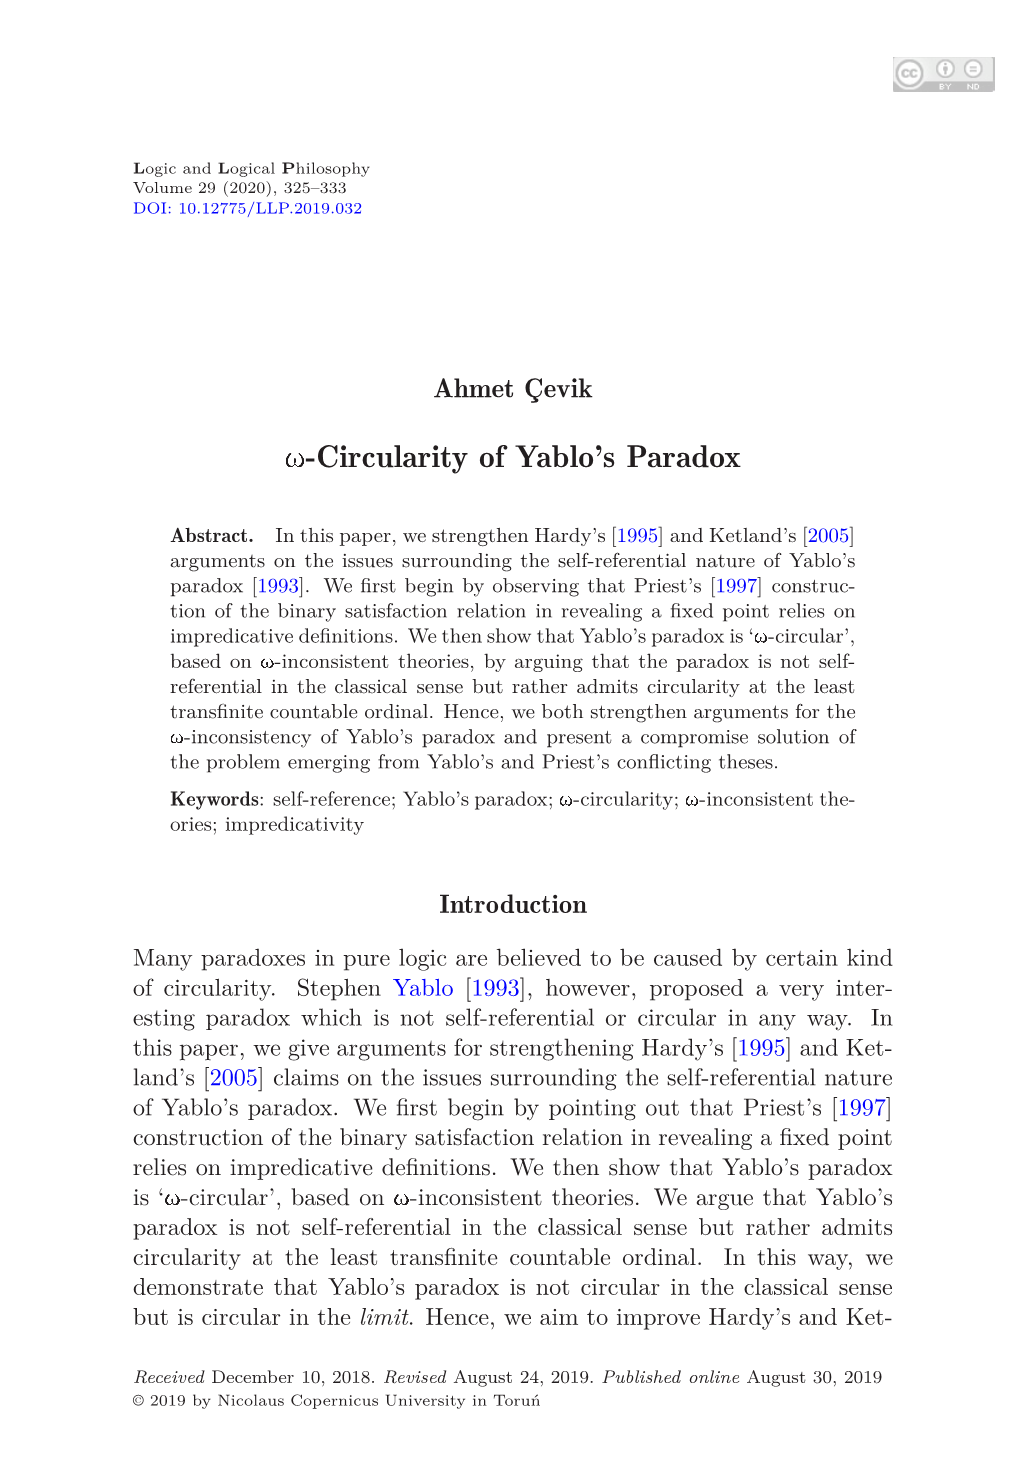 Û-Circularity of Yablo's Paradox